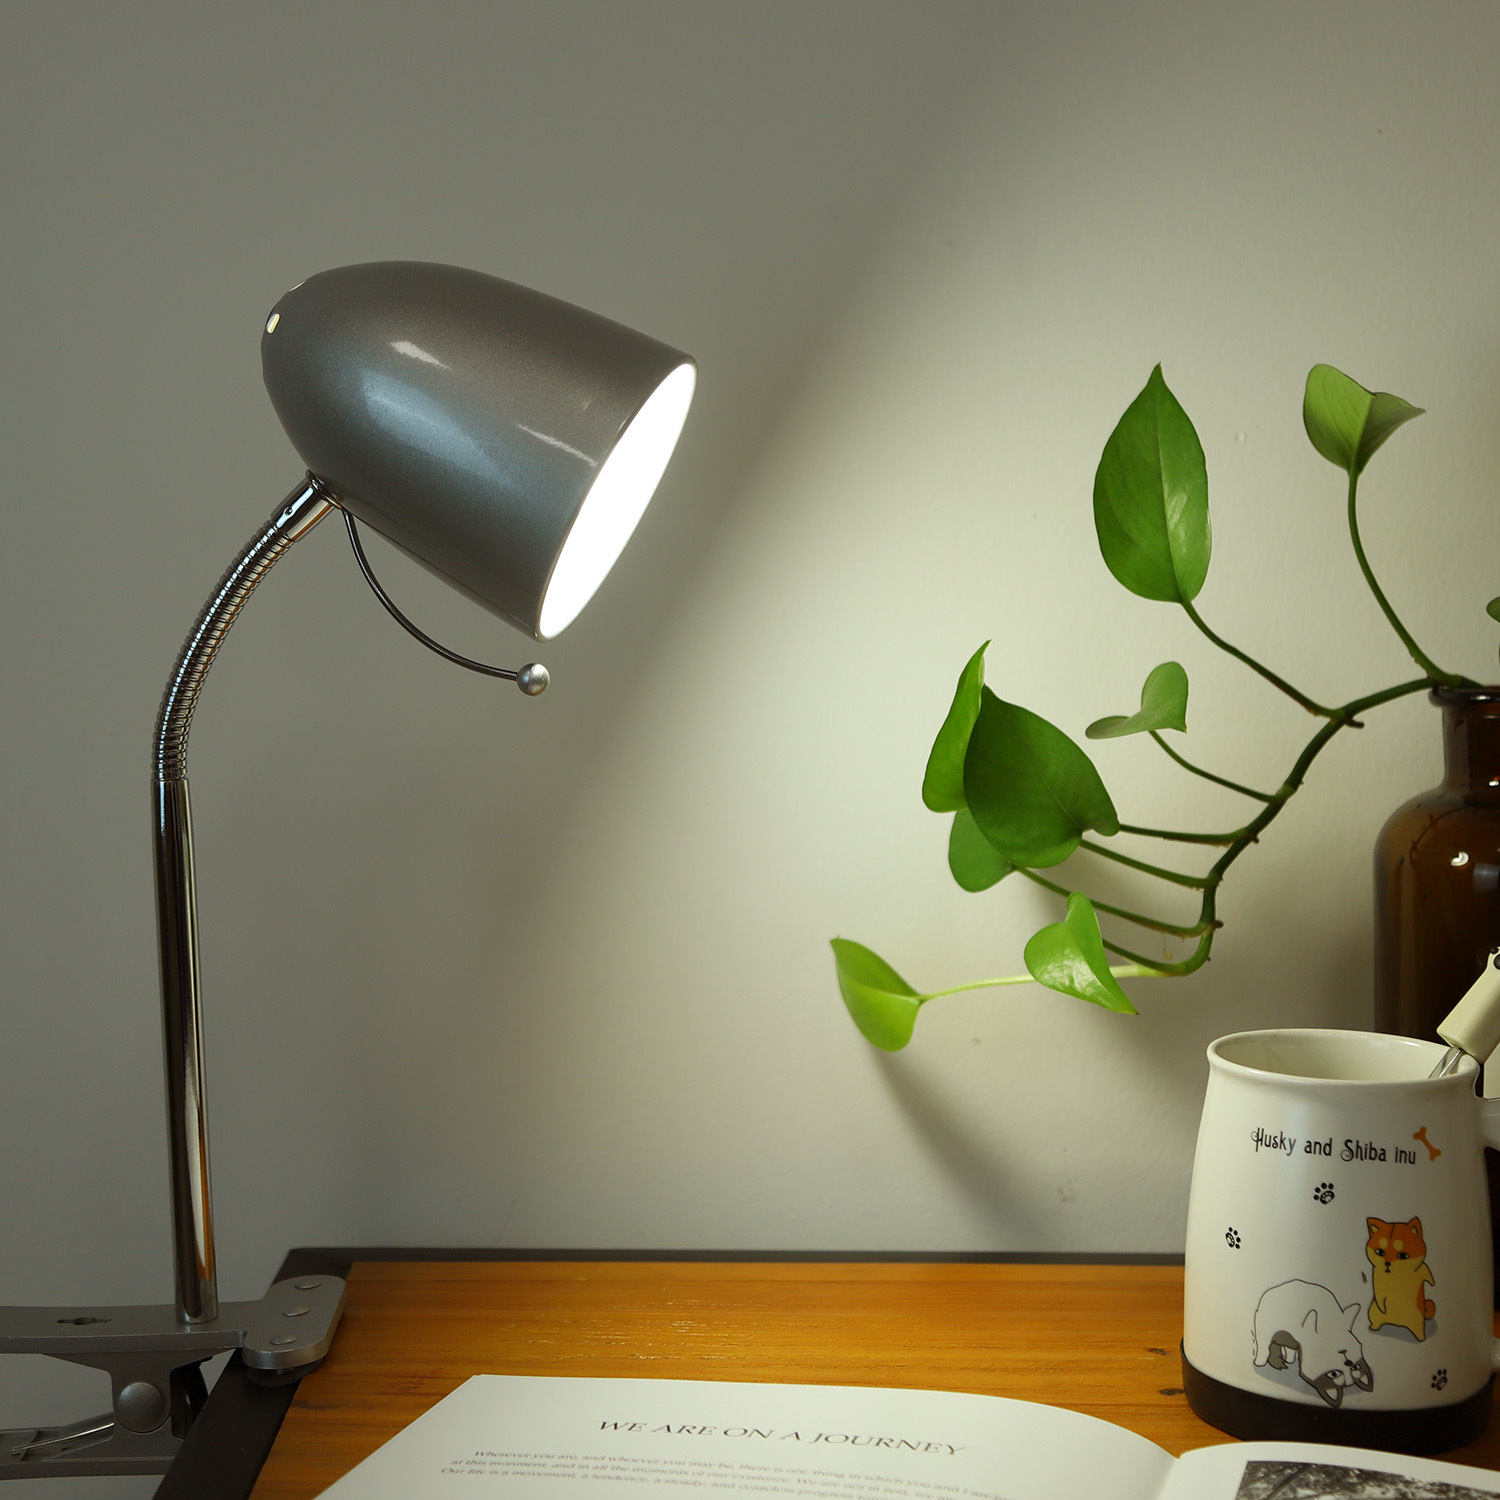 Aigostar - Tafellamp, beweegbaar, met bevestigingsklem, retro-design, E27(max 11W), Lampen niet inbegrepen, zilver